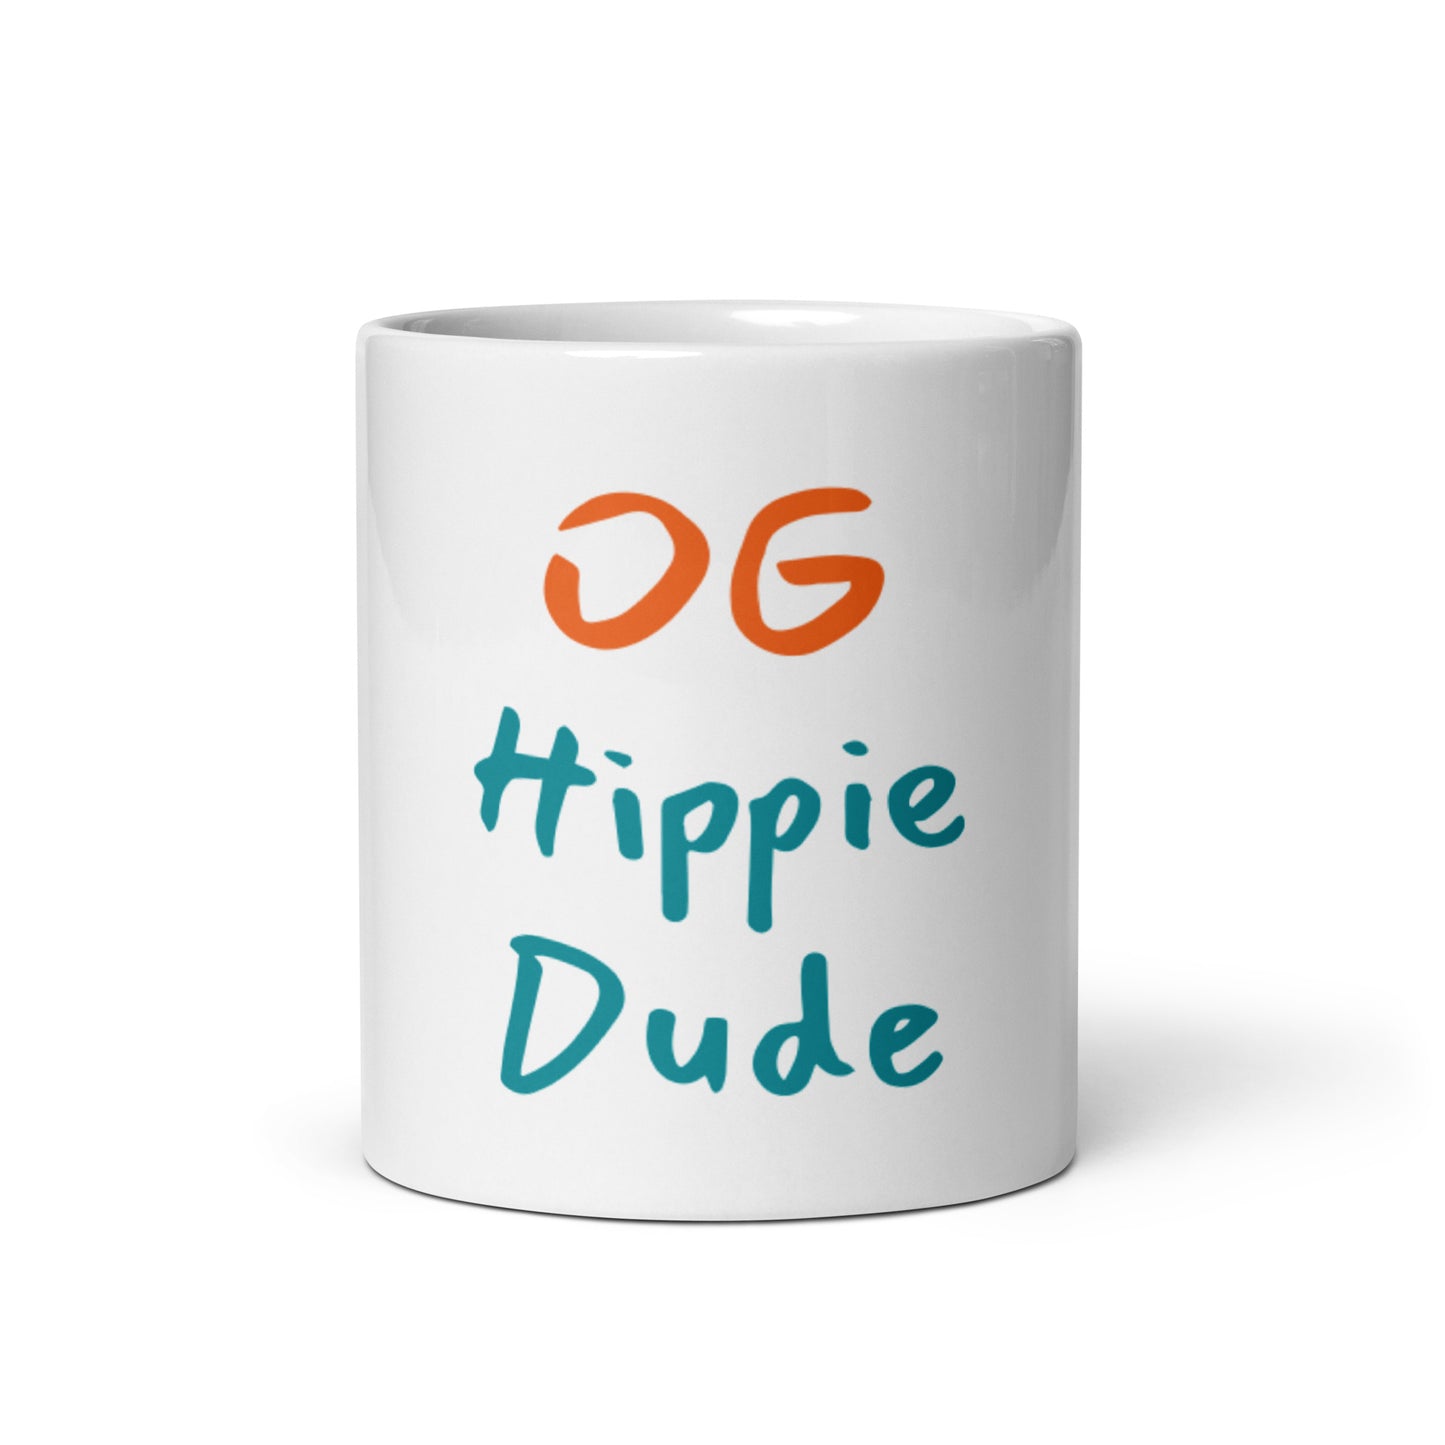 White Glossy Mug - OG Hippie Dude